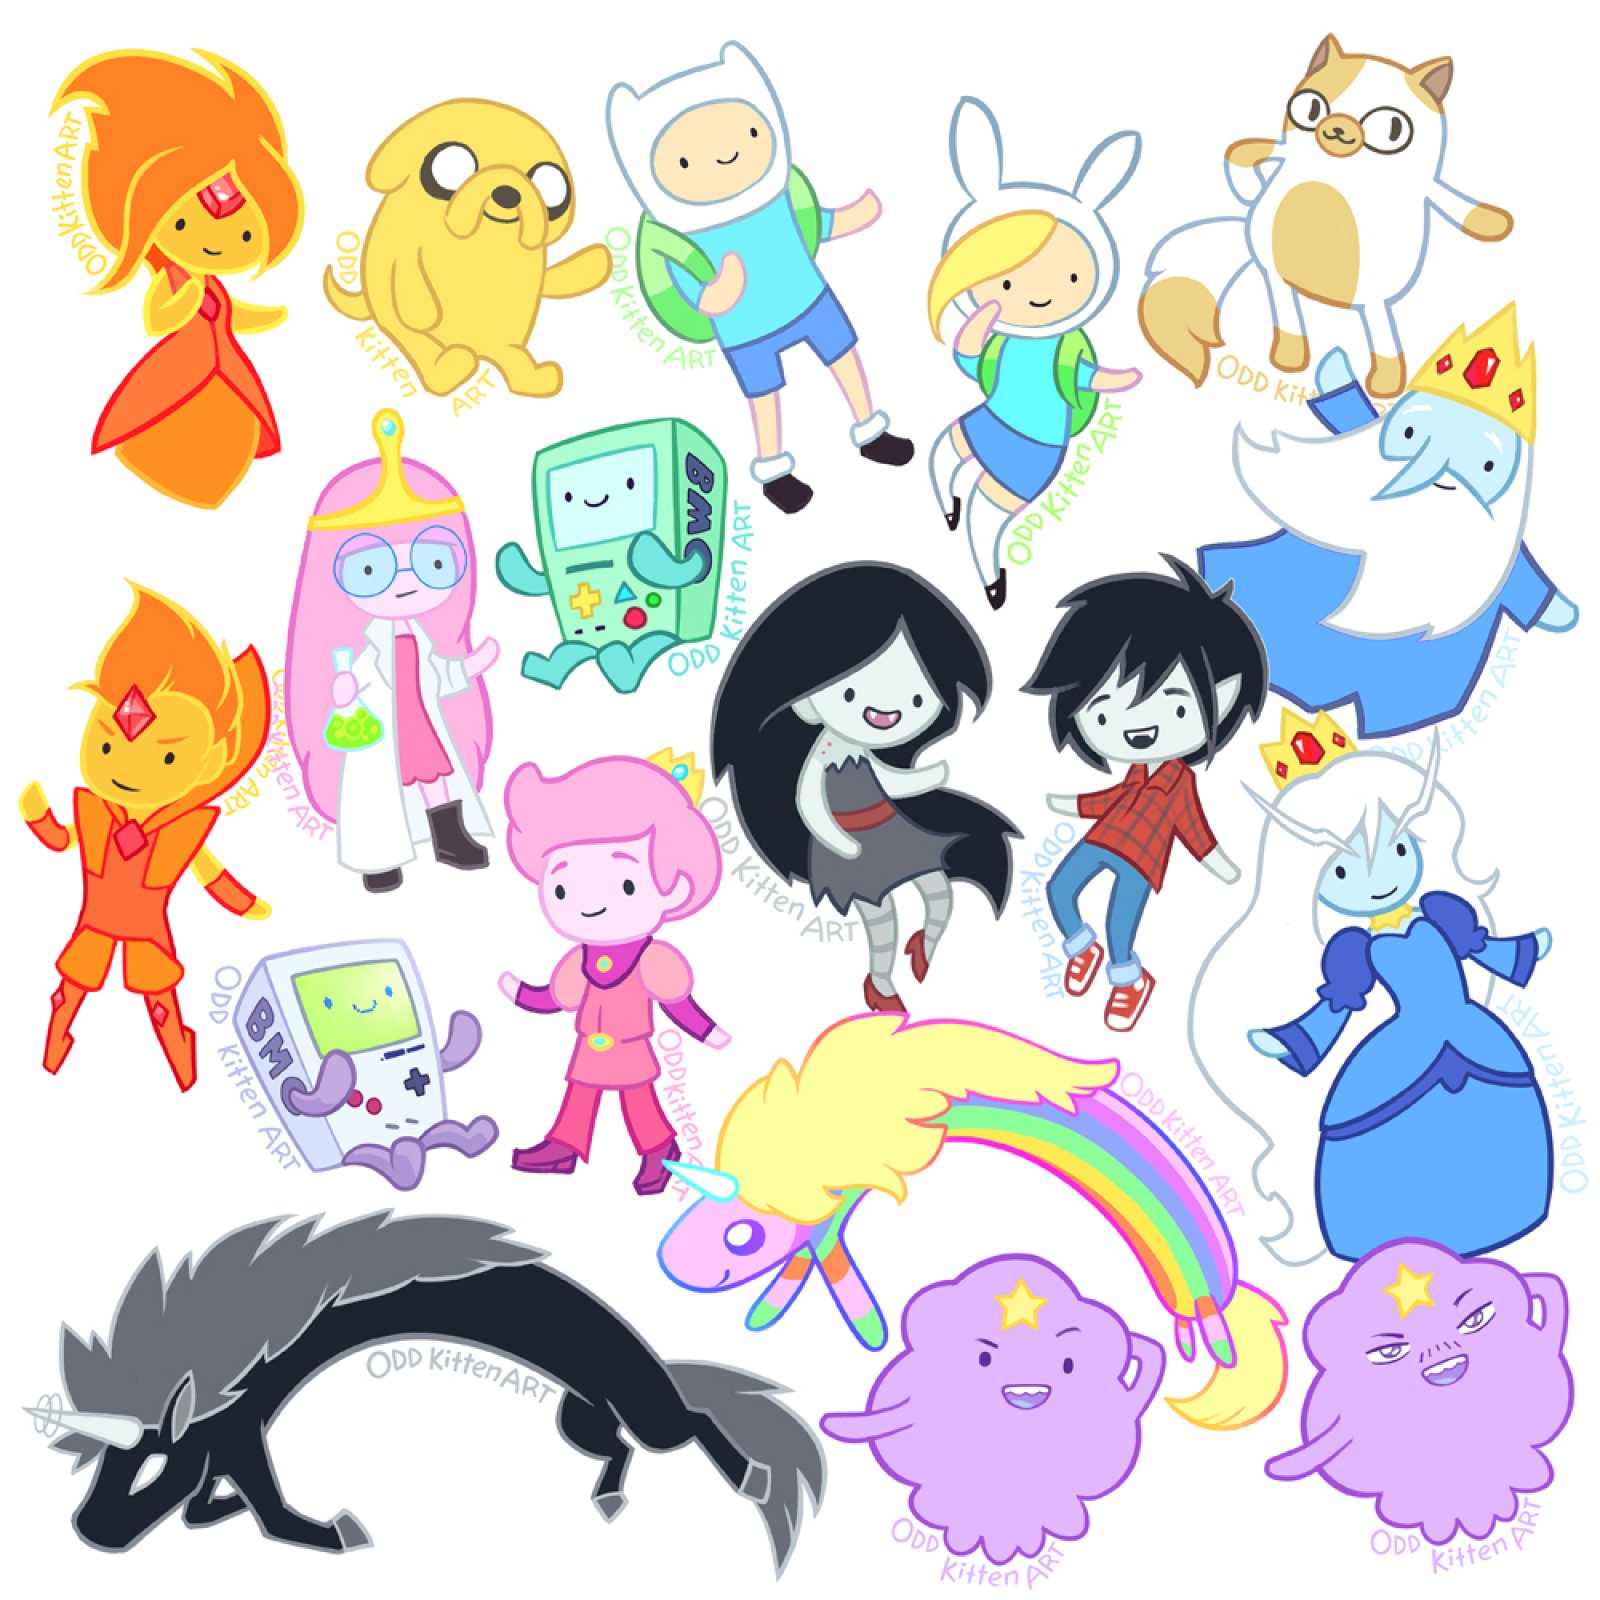 Время Приключений (Adventure Time)